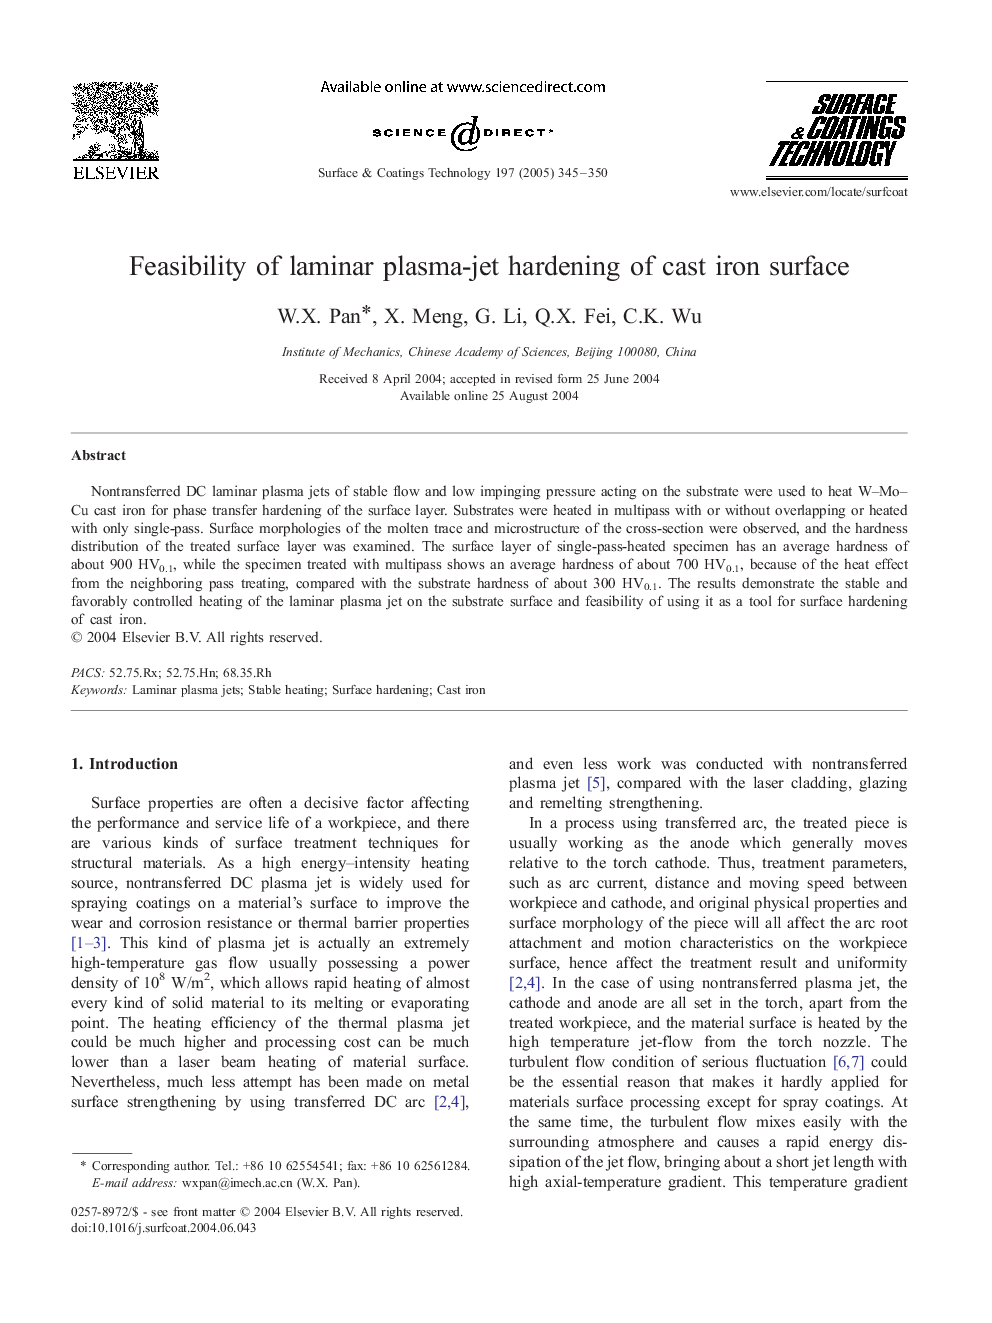 Feasibility of laminar plasma-jet hardening of cast iron surface